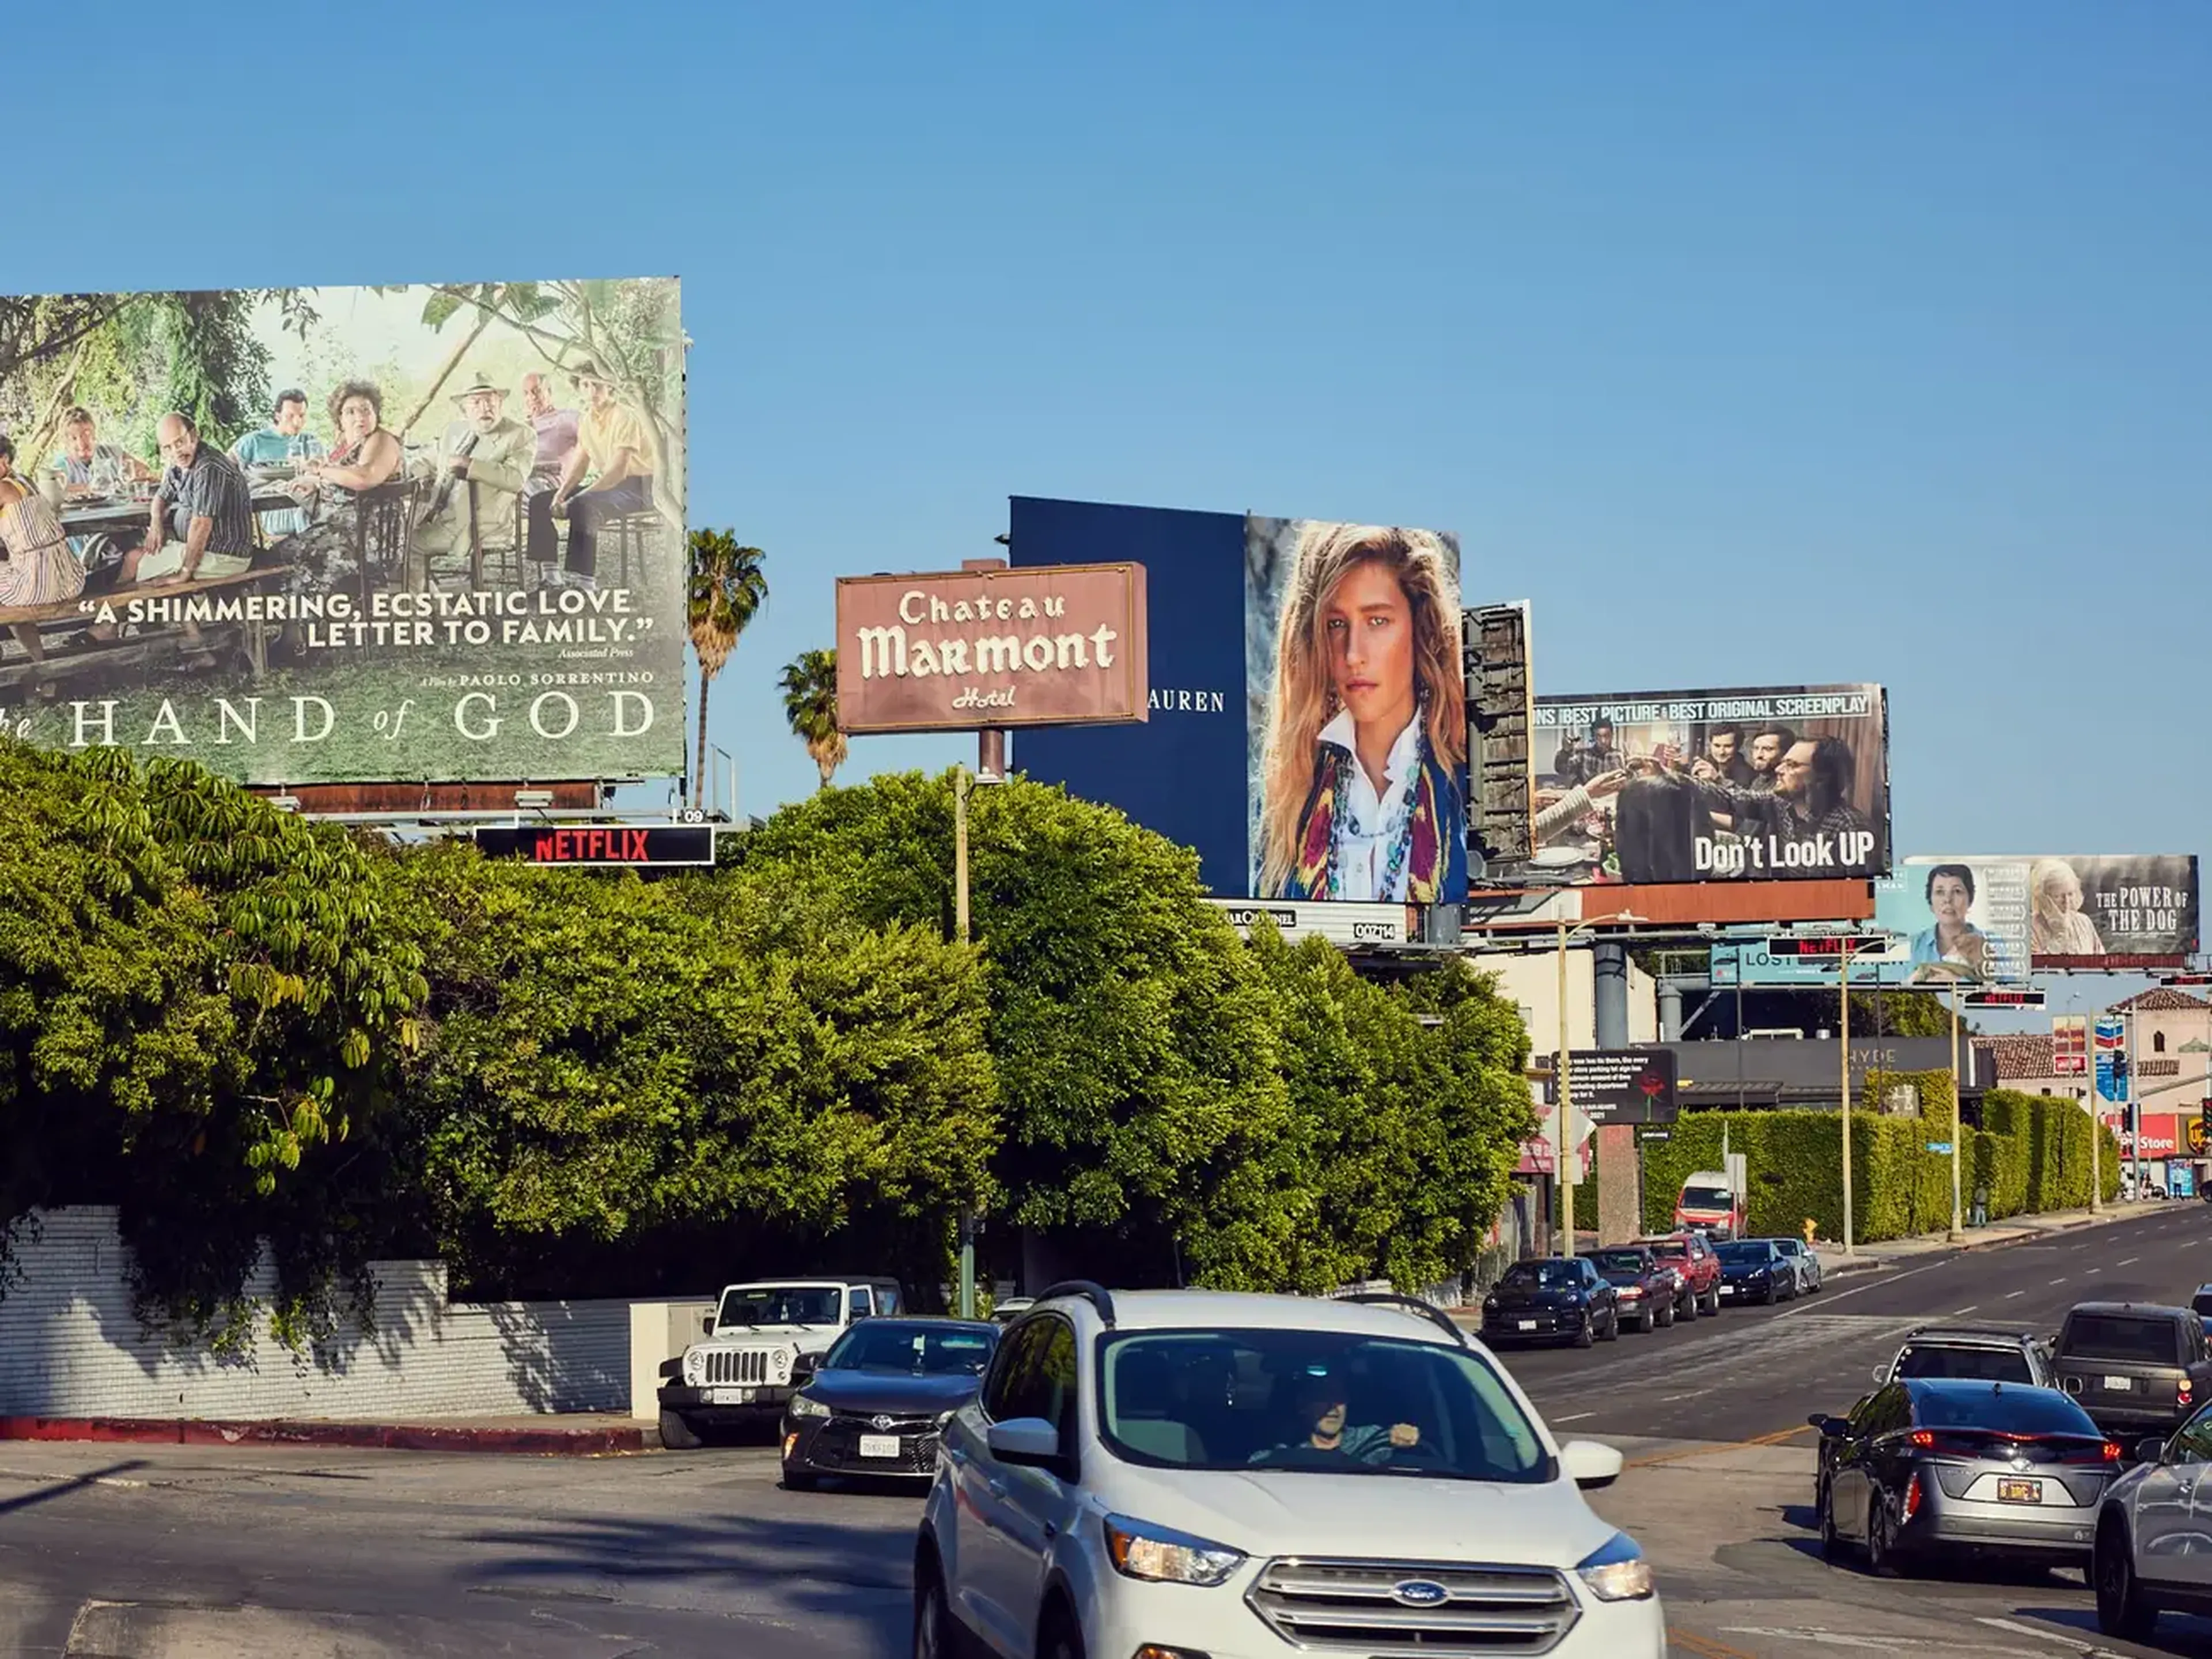 Las vallas publicitarias propiedad de Netflix se alinean en un tramo concurrido de Sunset Boulevard en West Hollywood.